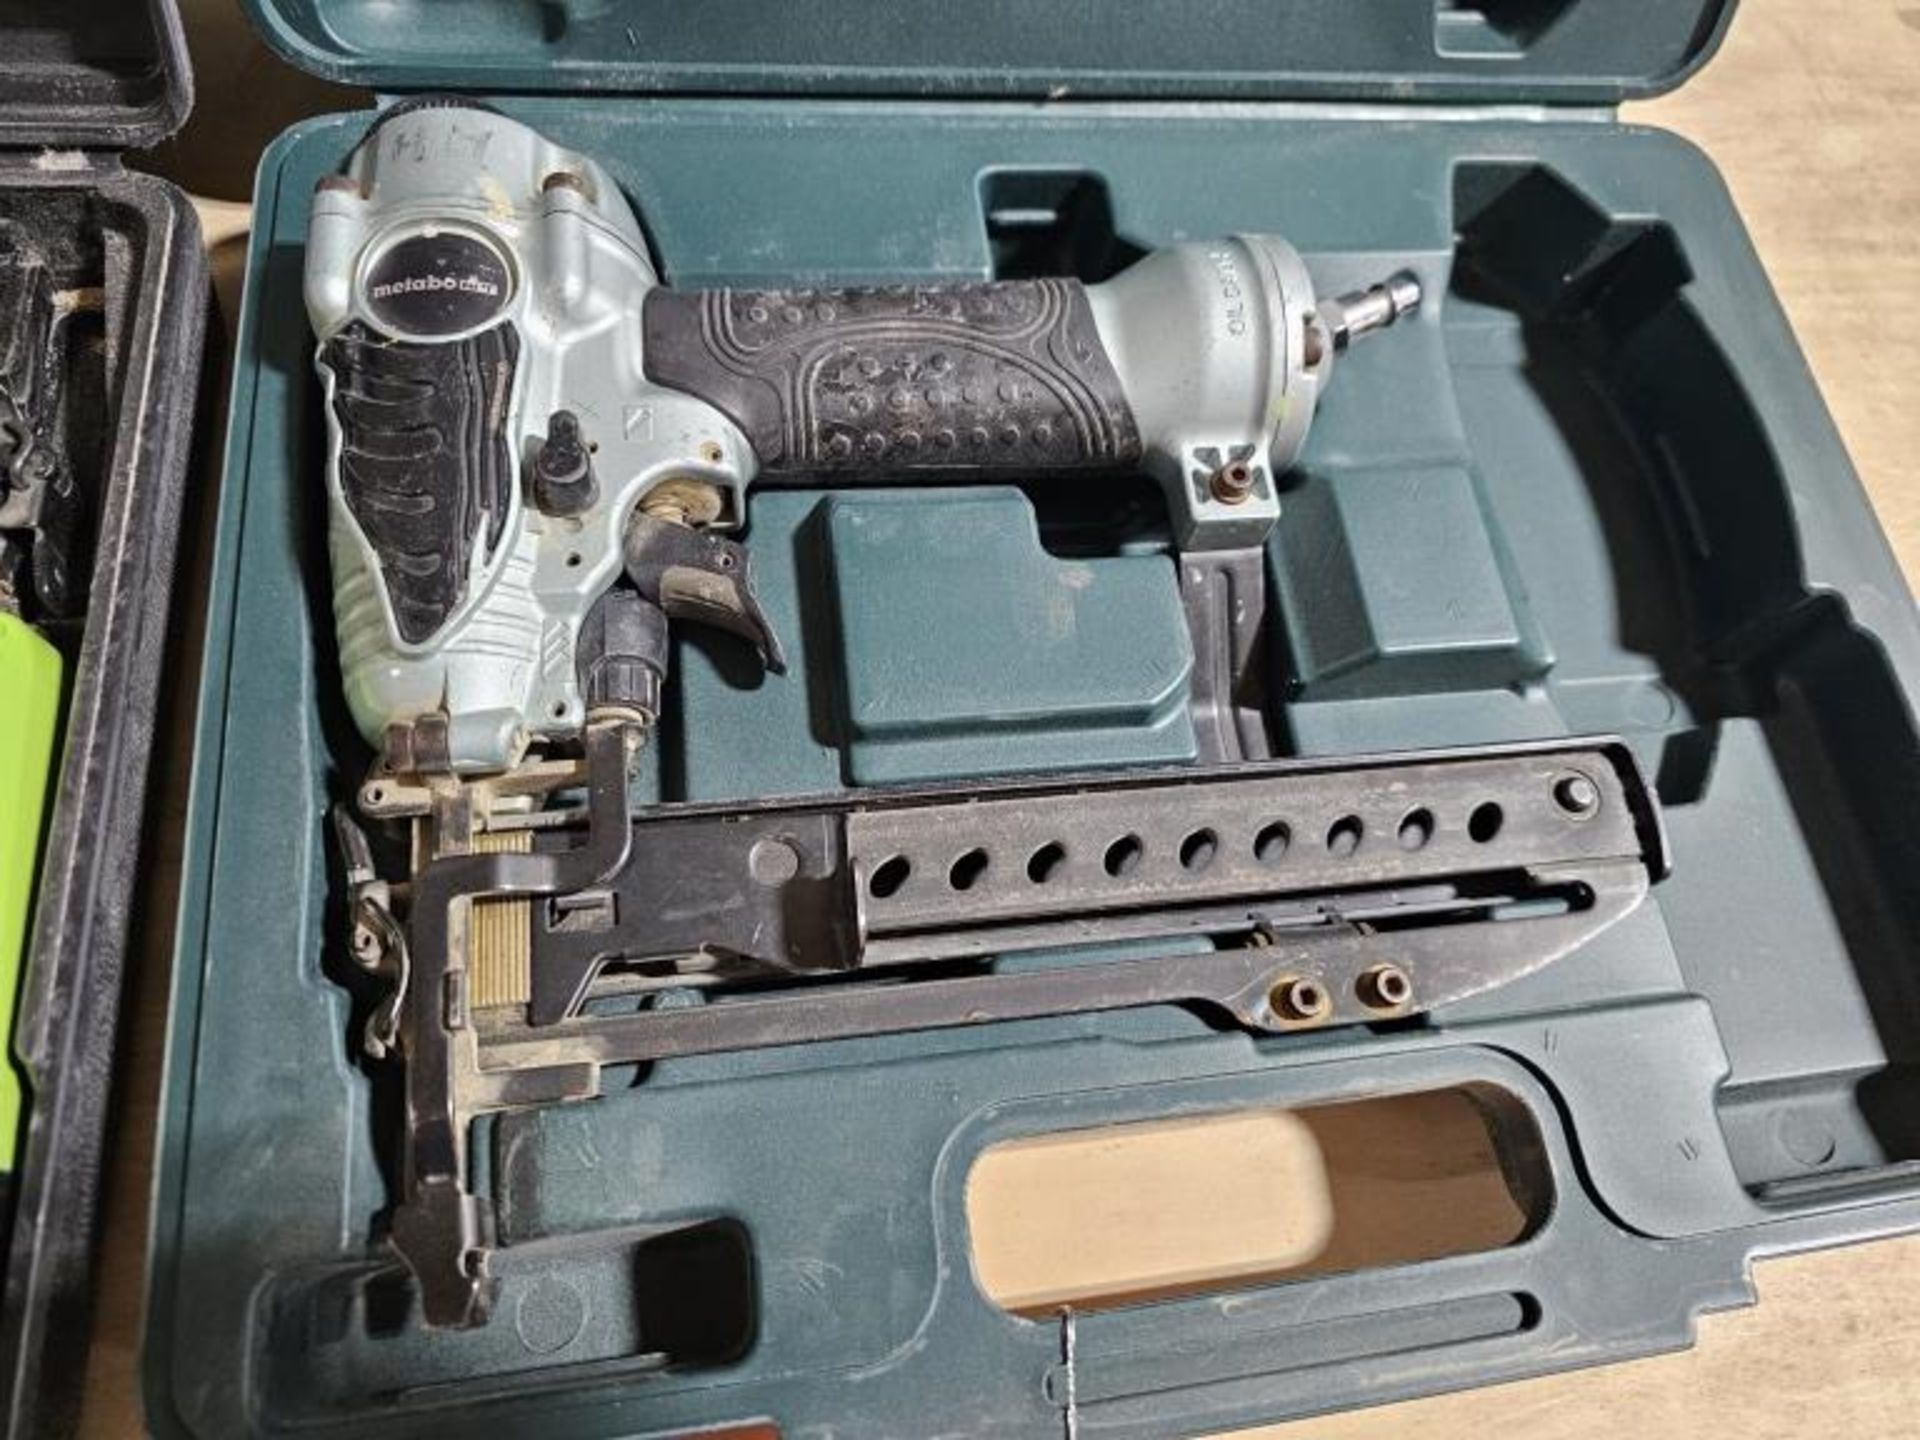 Crex Pneumatic Nail Gun/Metabo Stapler - Image 7 of 14